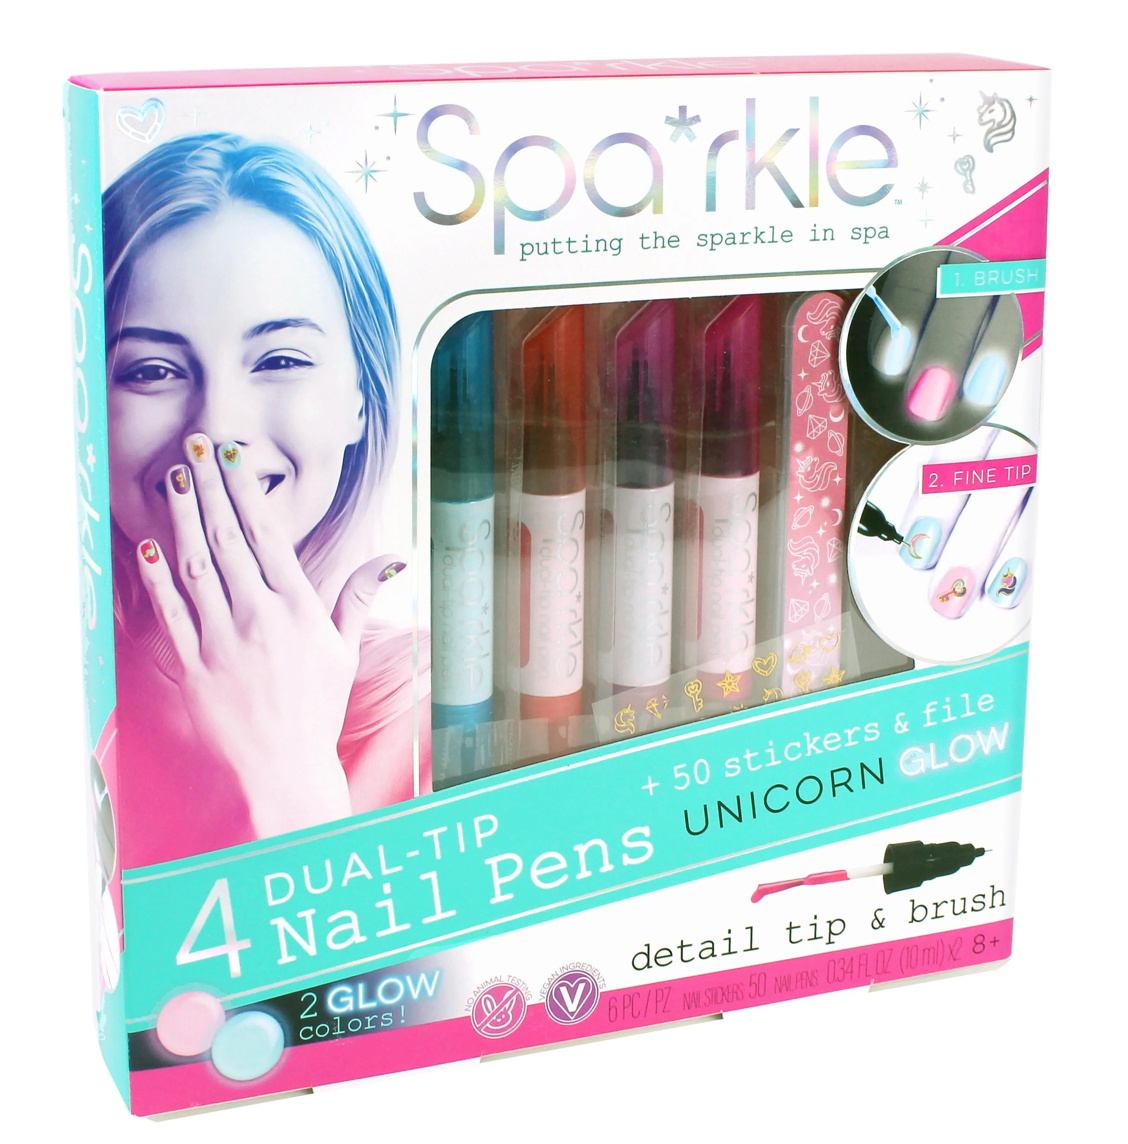 Spa*rkle 4 Dual-Tip Nail Pens Unicorn Glow Set